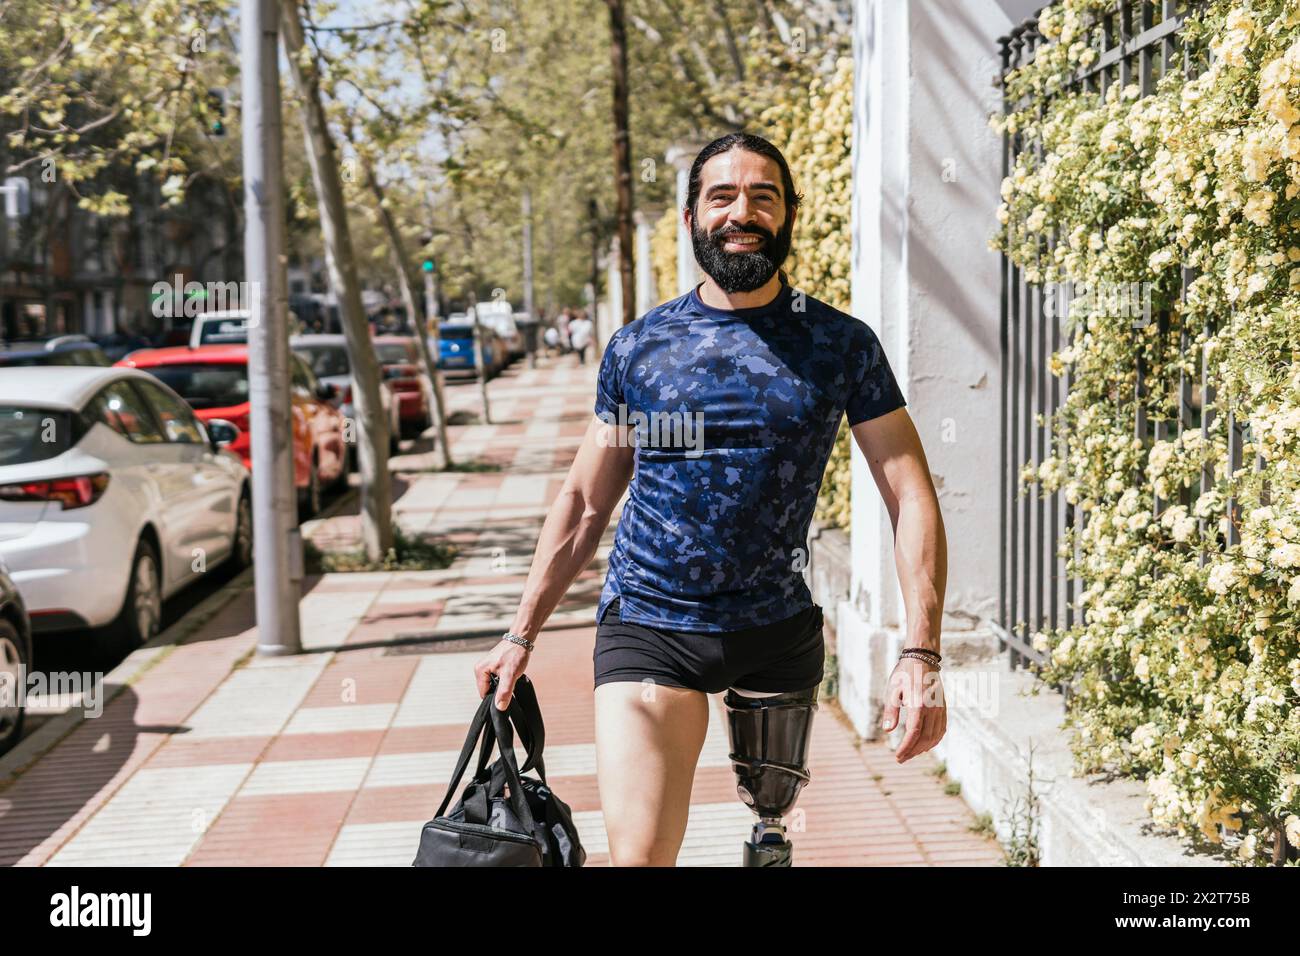 Athlète souriant avec une jambe prothétique marchant sur le trottoir Banque D'Images